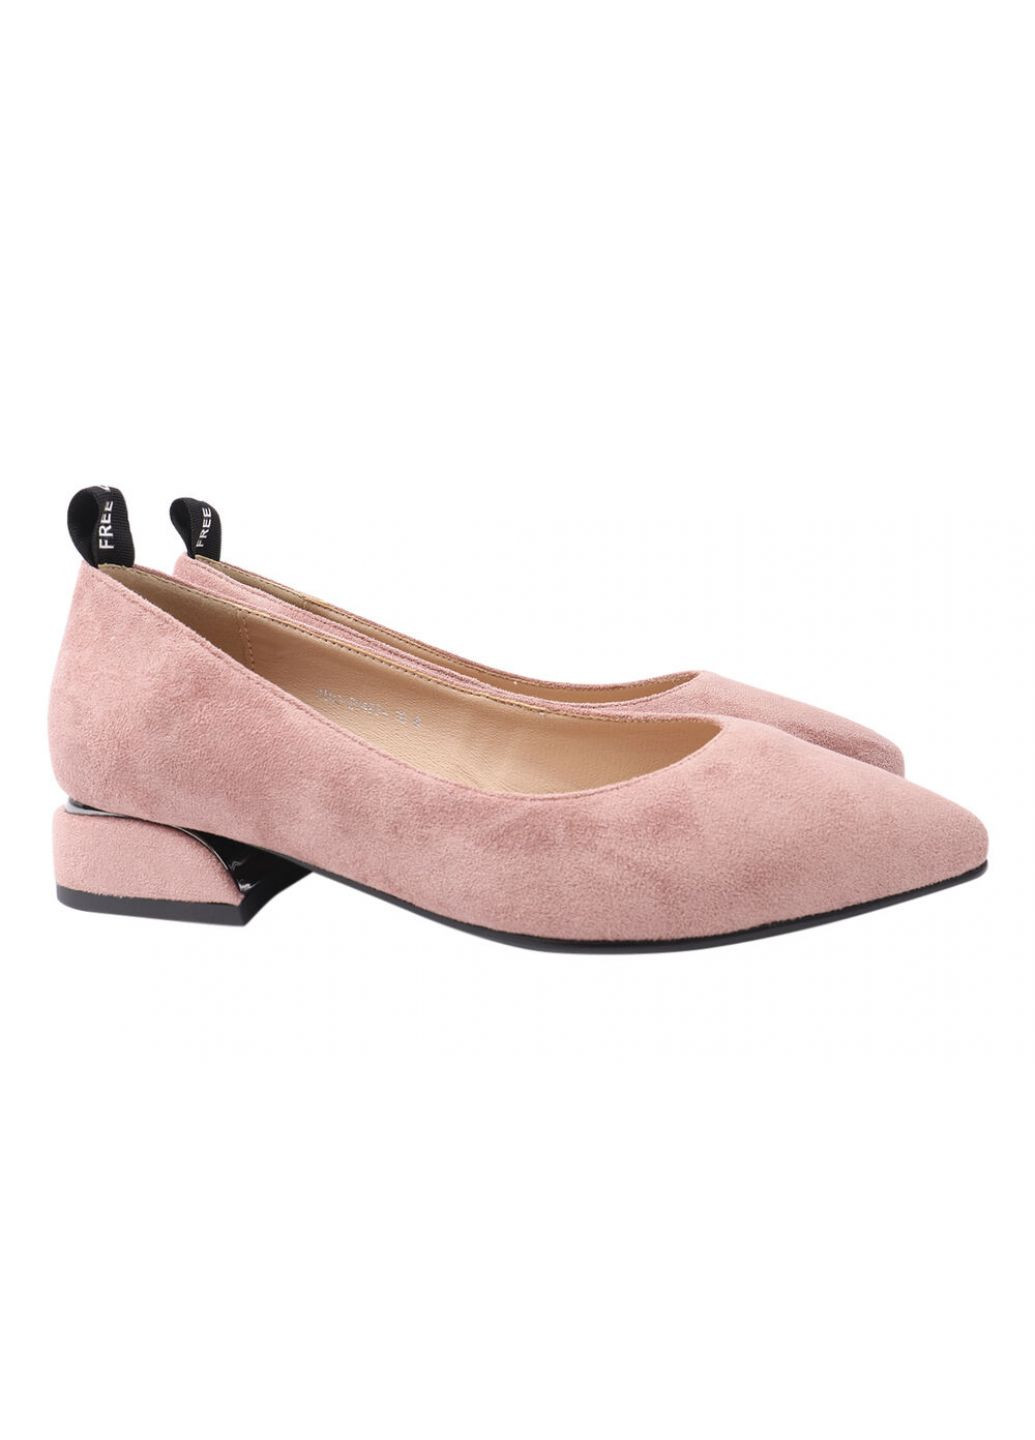 Туфли женские из эко замши, на низком ходу, розовые, LIICI